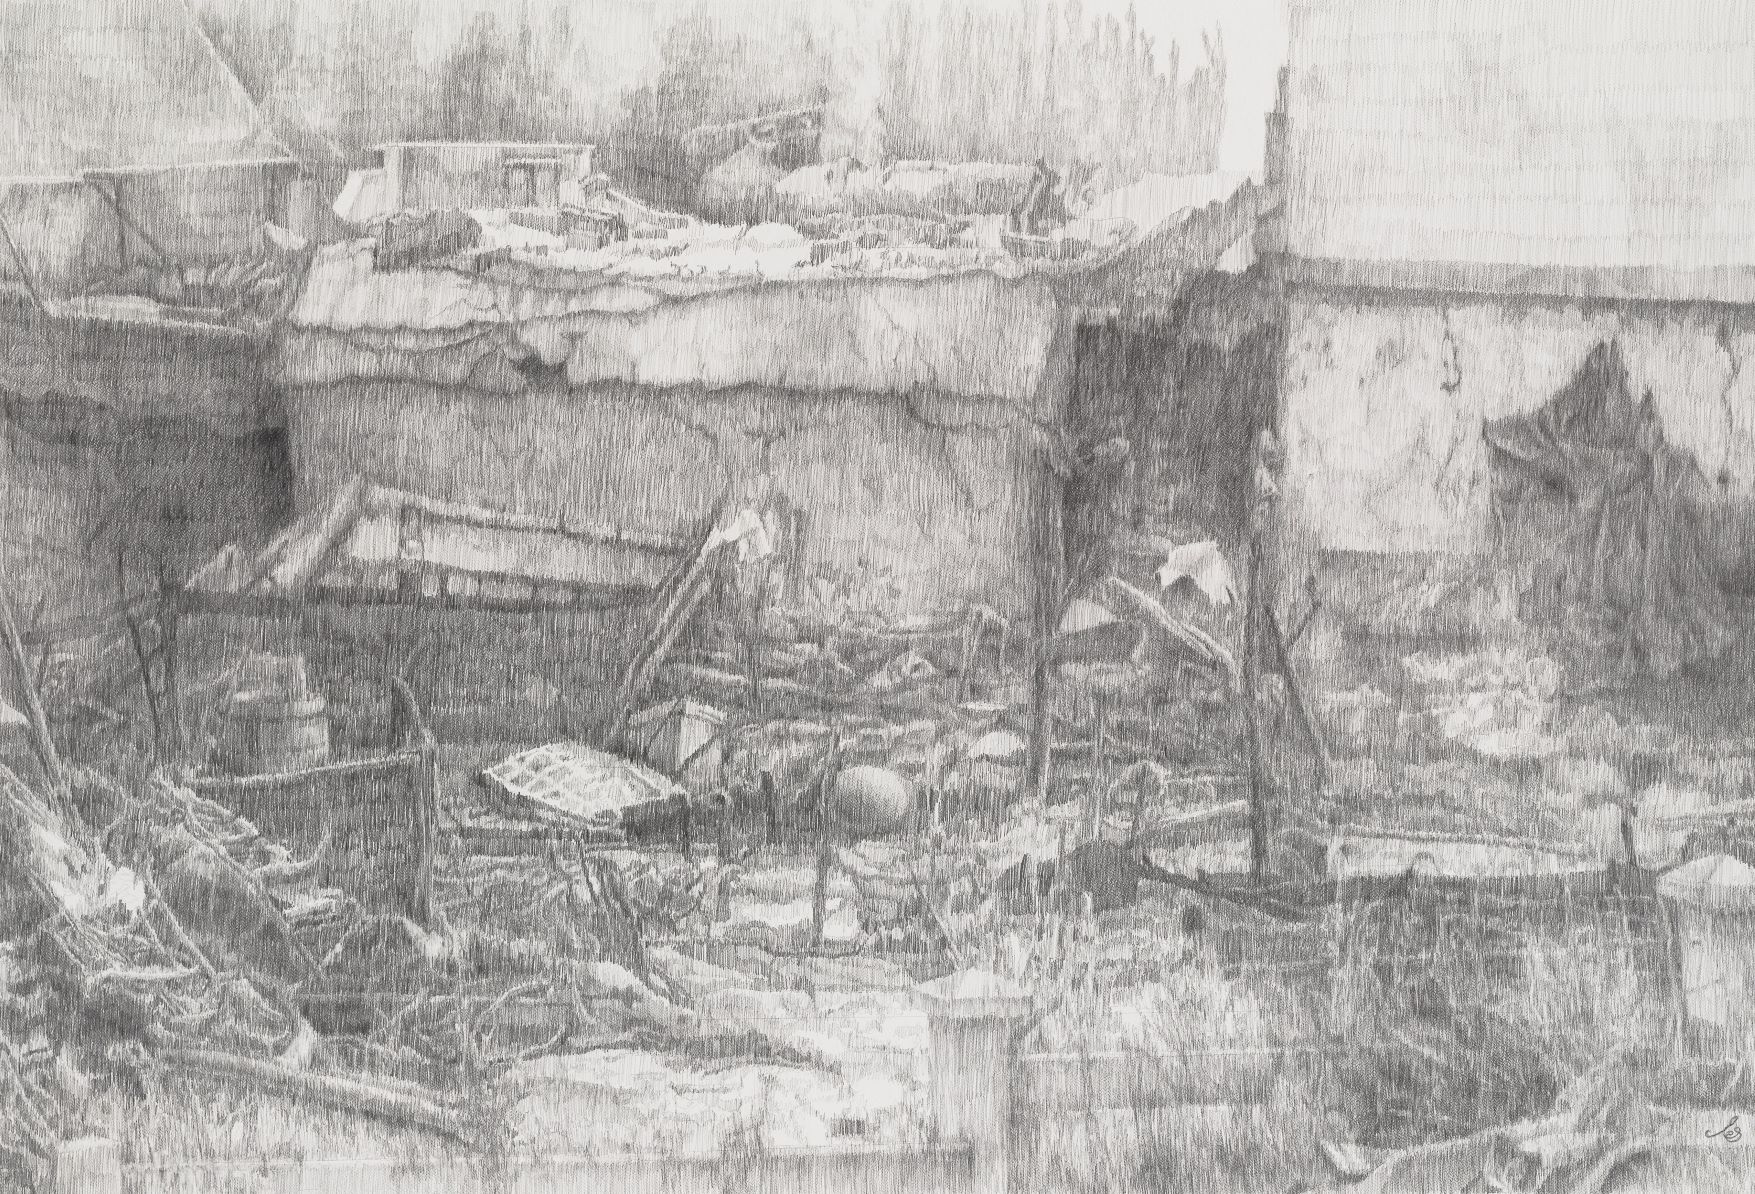 'Human Destruction', Esther Schnerr, Pencil on paper, 150 x 200 cm